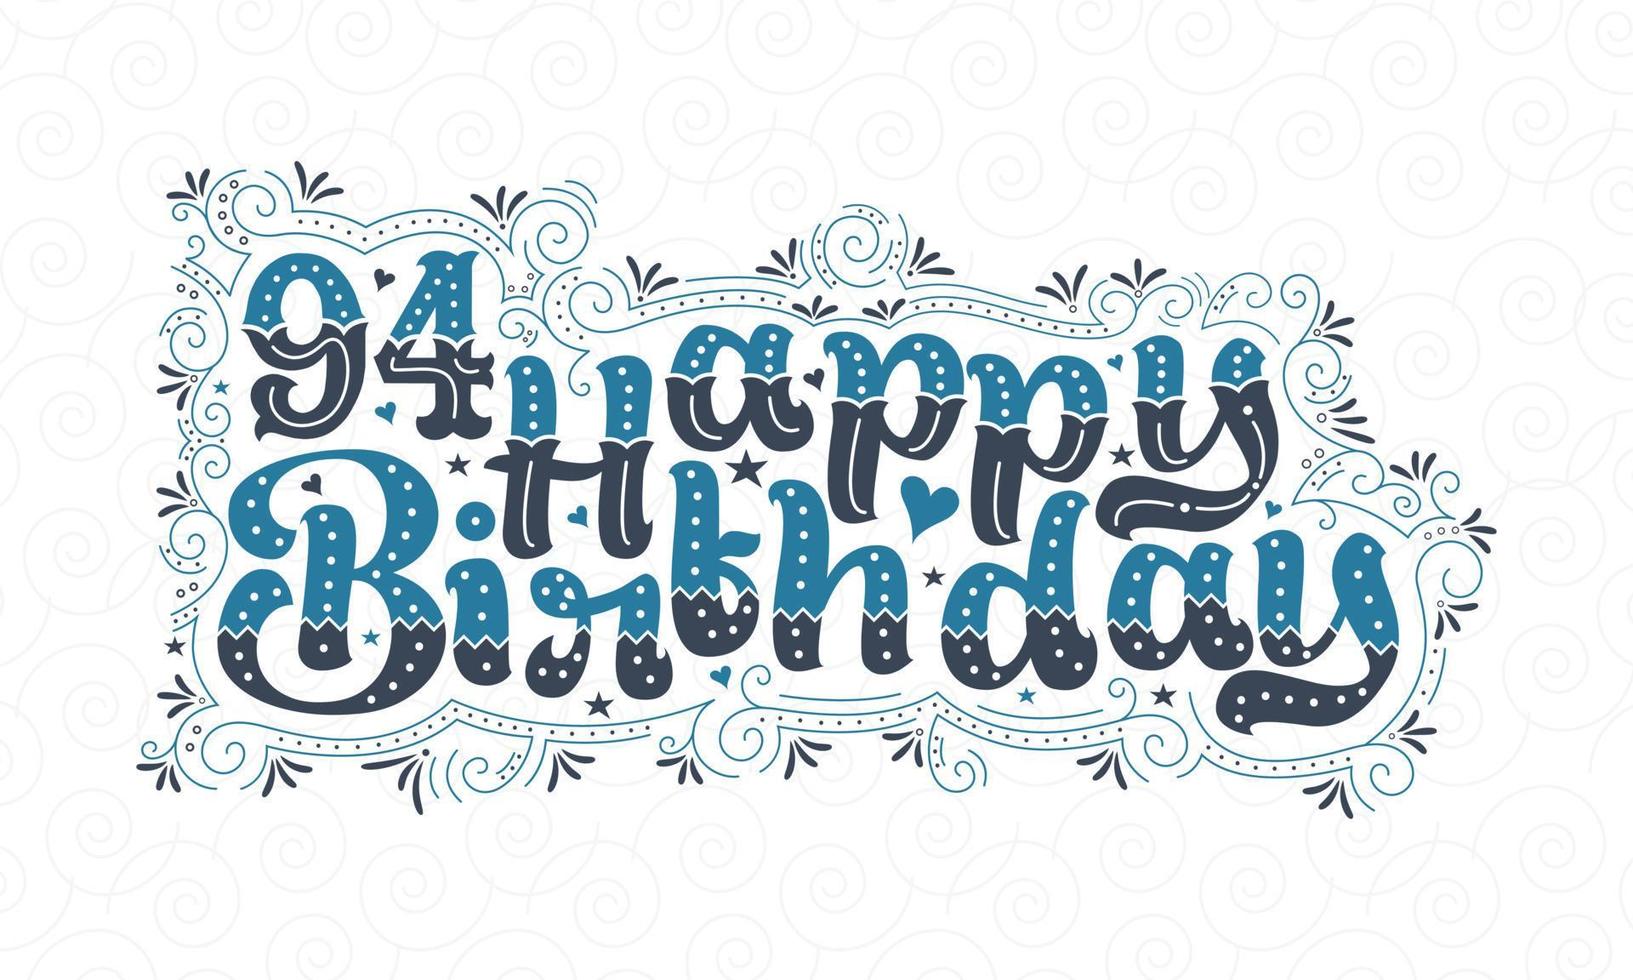 94e gelukkige verjaardag belettering, 94 jaar verjaardag mooi typografieontwerp met blauwe en zwarte stippen, lijnen en bladeren. vector